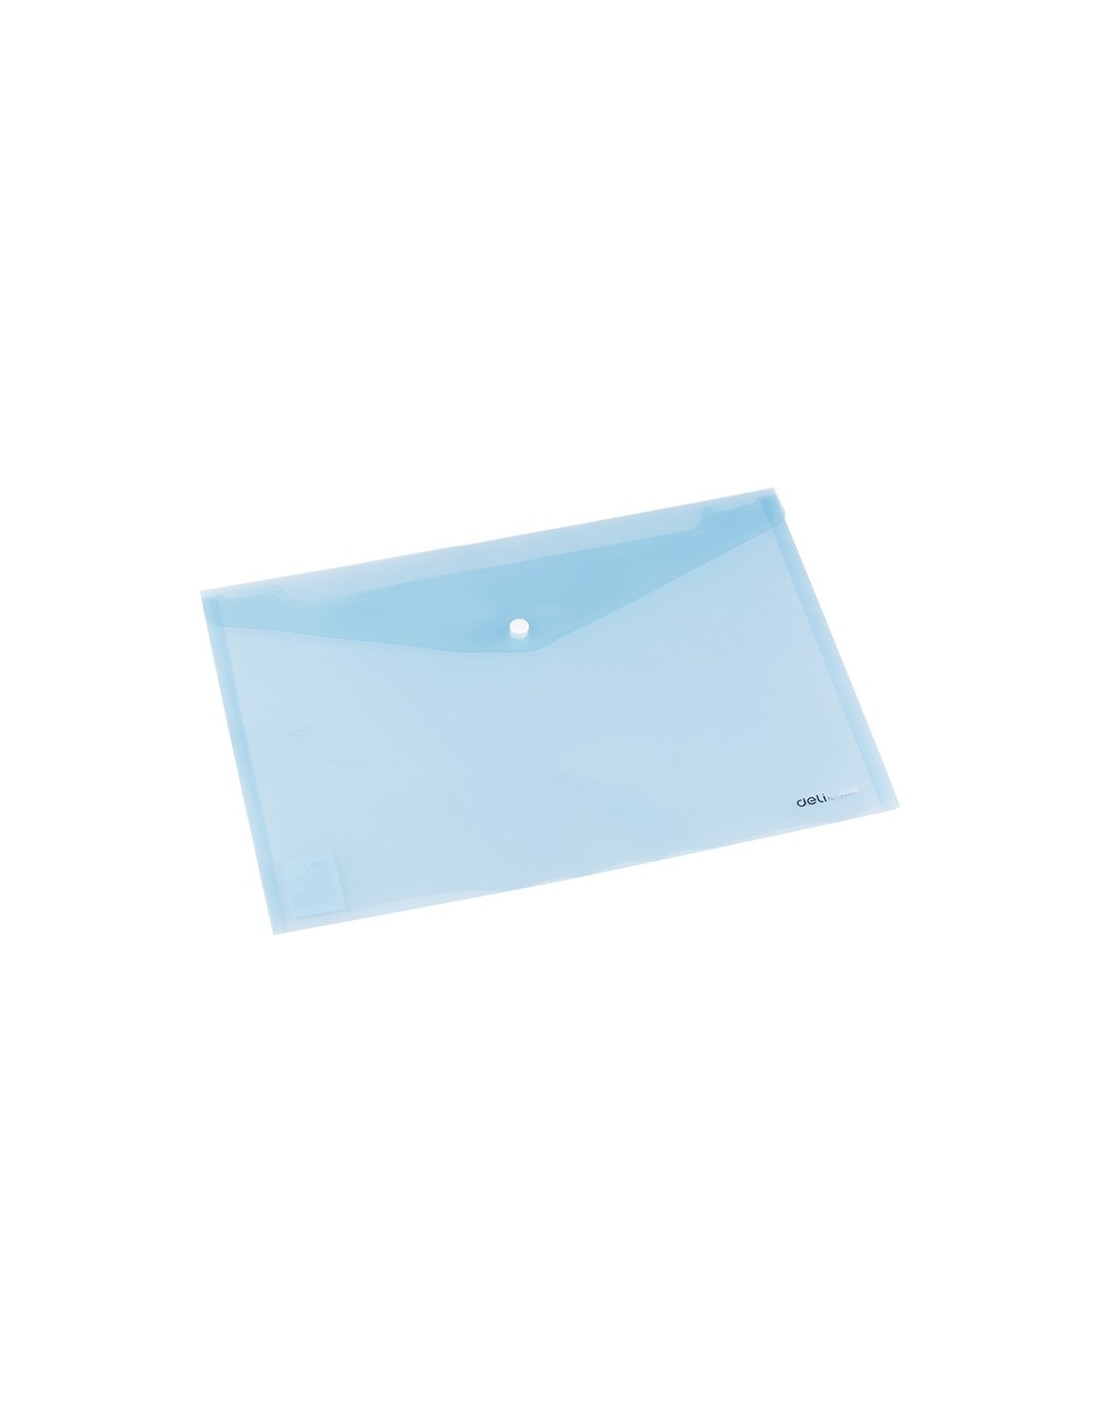 Pochette enveloppe Rexel Ice A4 +carte de visite transparent sur